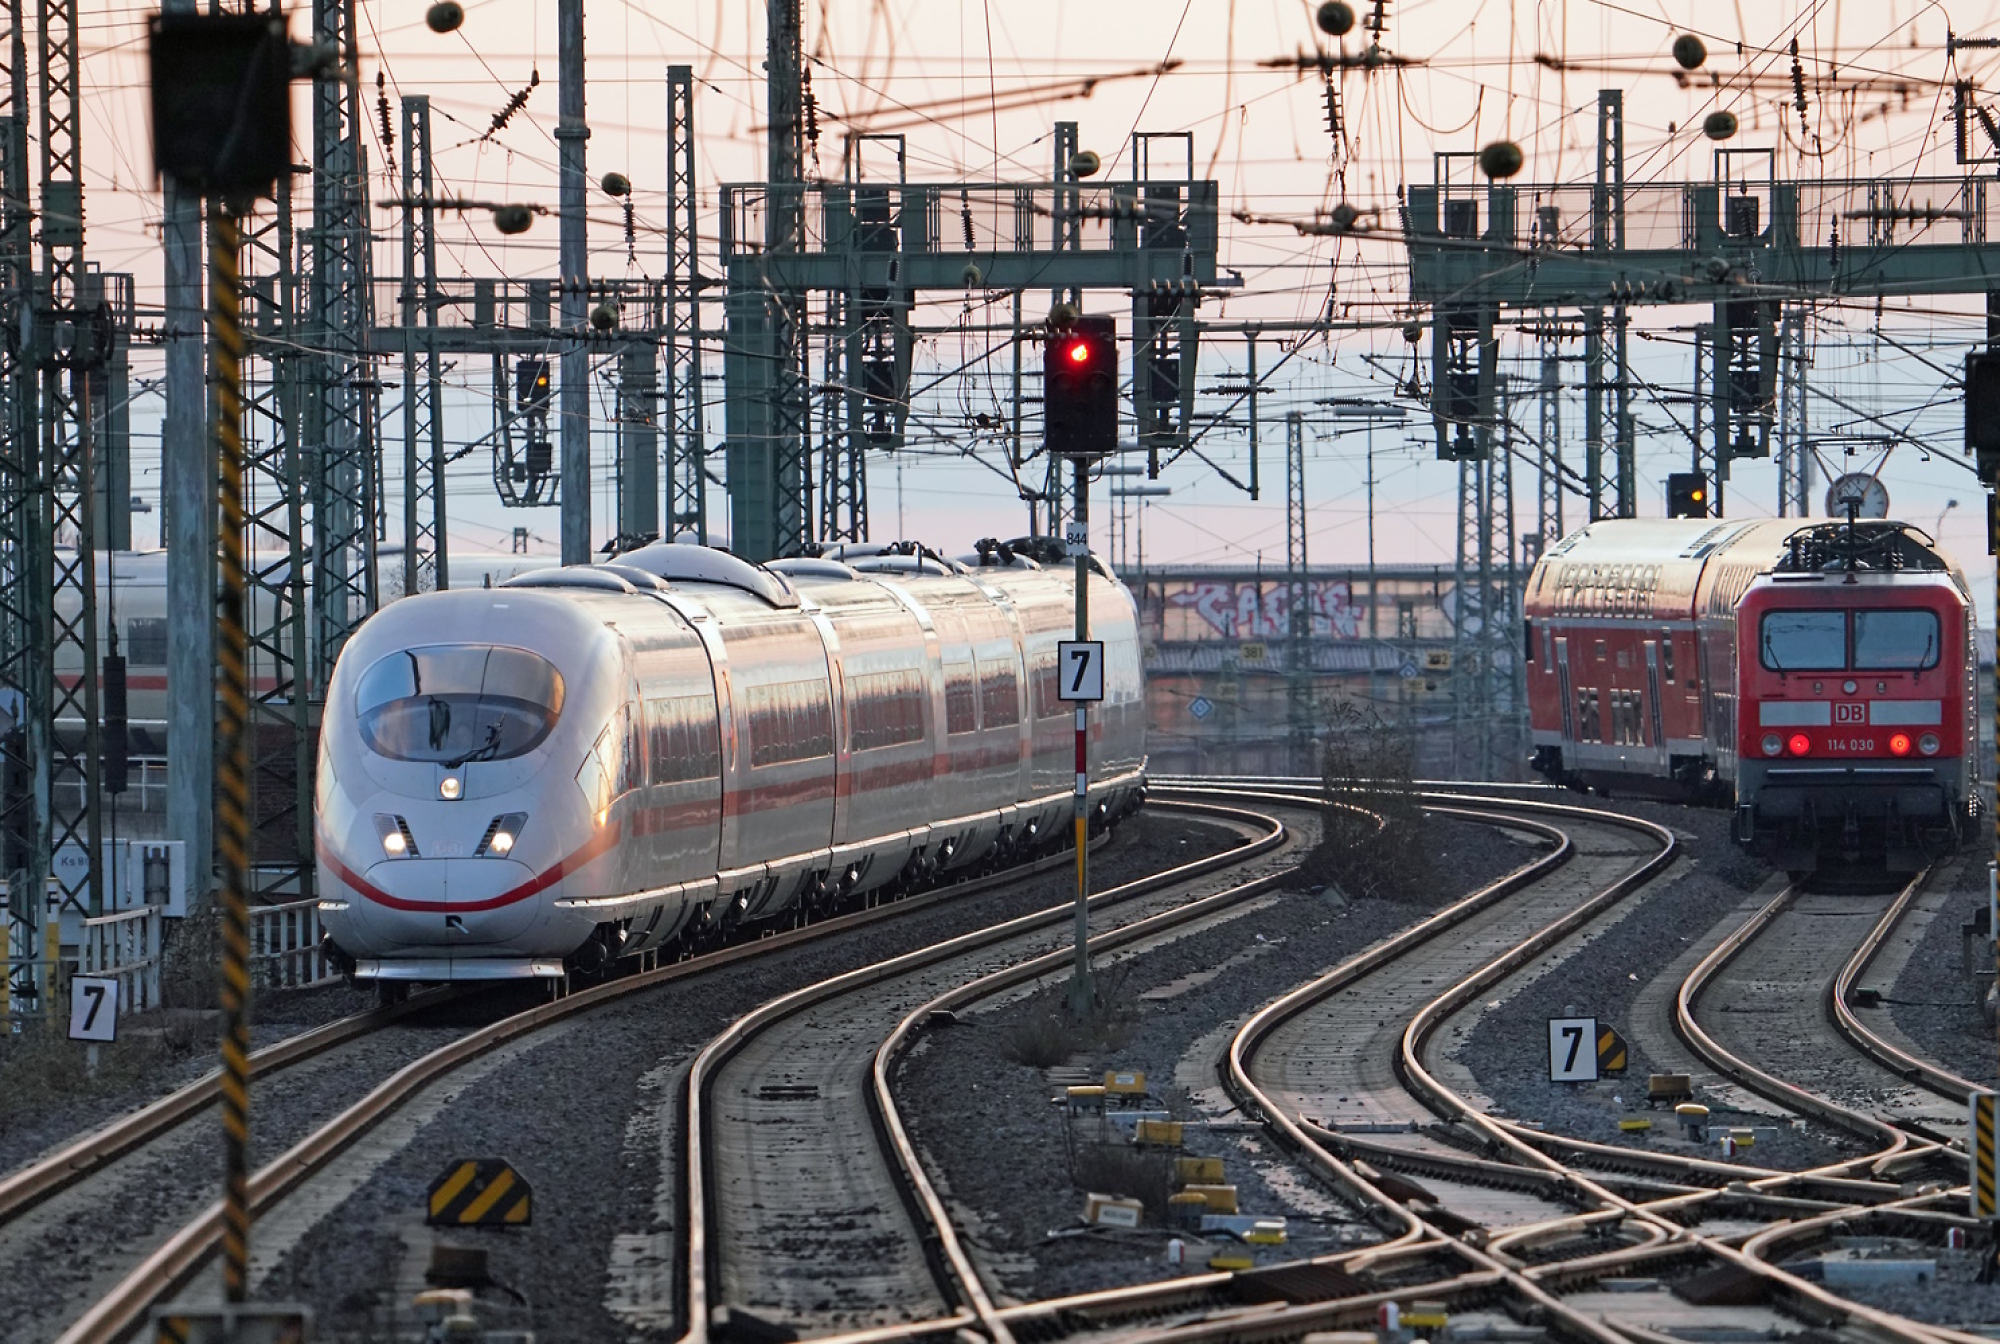 Un moderno treno ad alta velocità che arriva a una stazione con più binari e cavi aerei al crepuscolo.